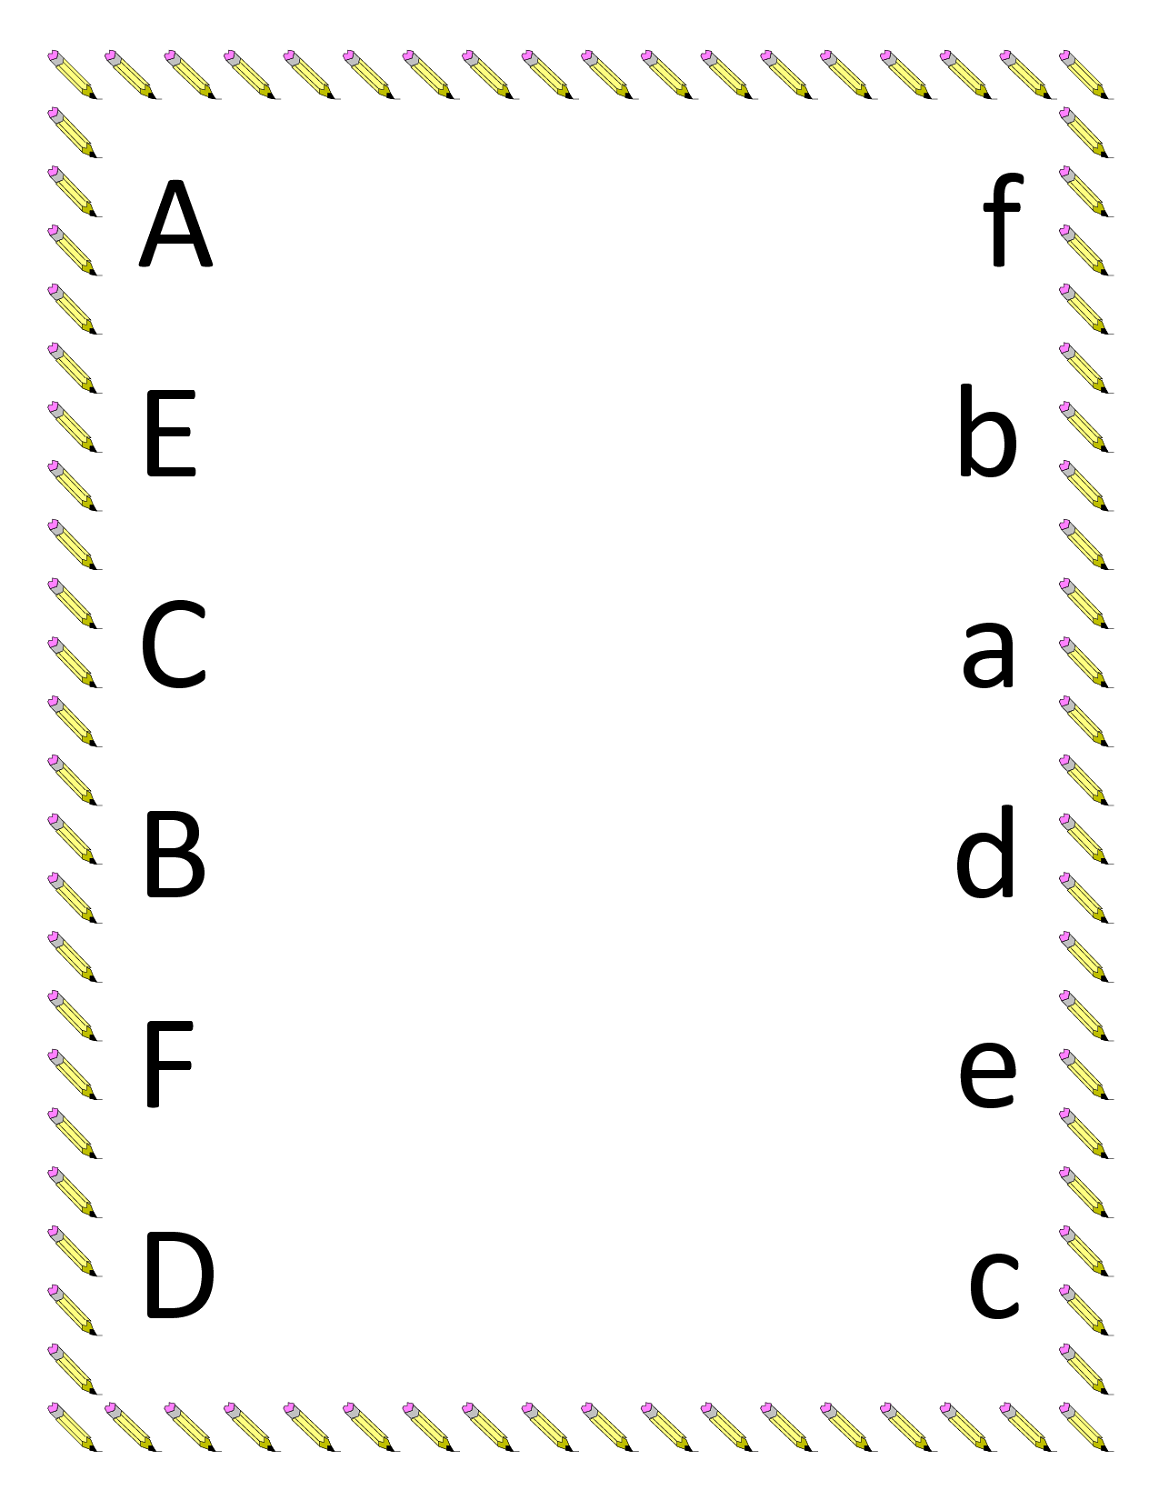 worksheets for kindergarten letters Worksheets alphabet kindergarten